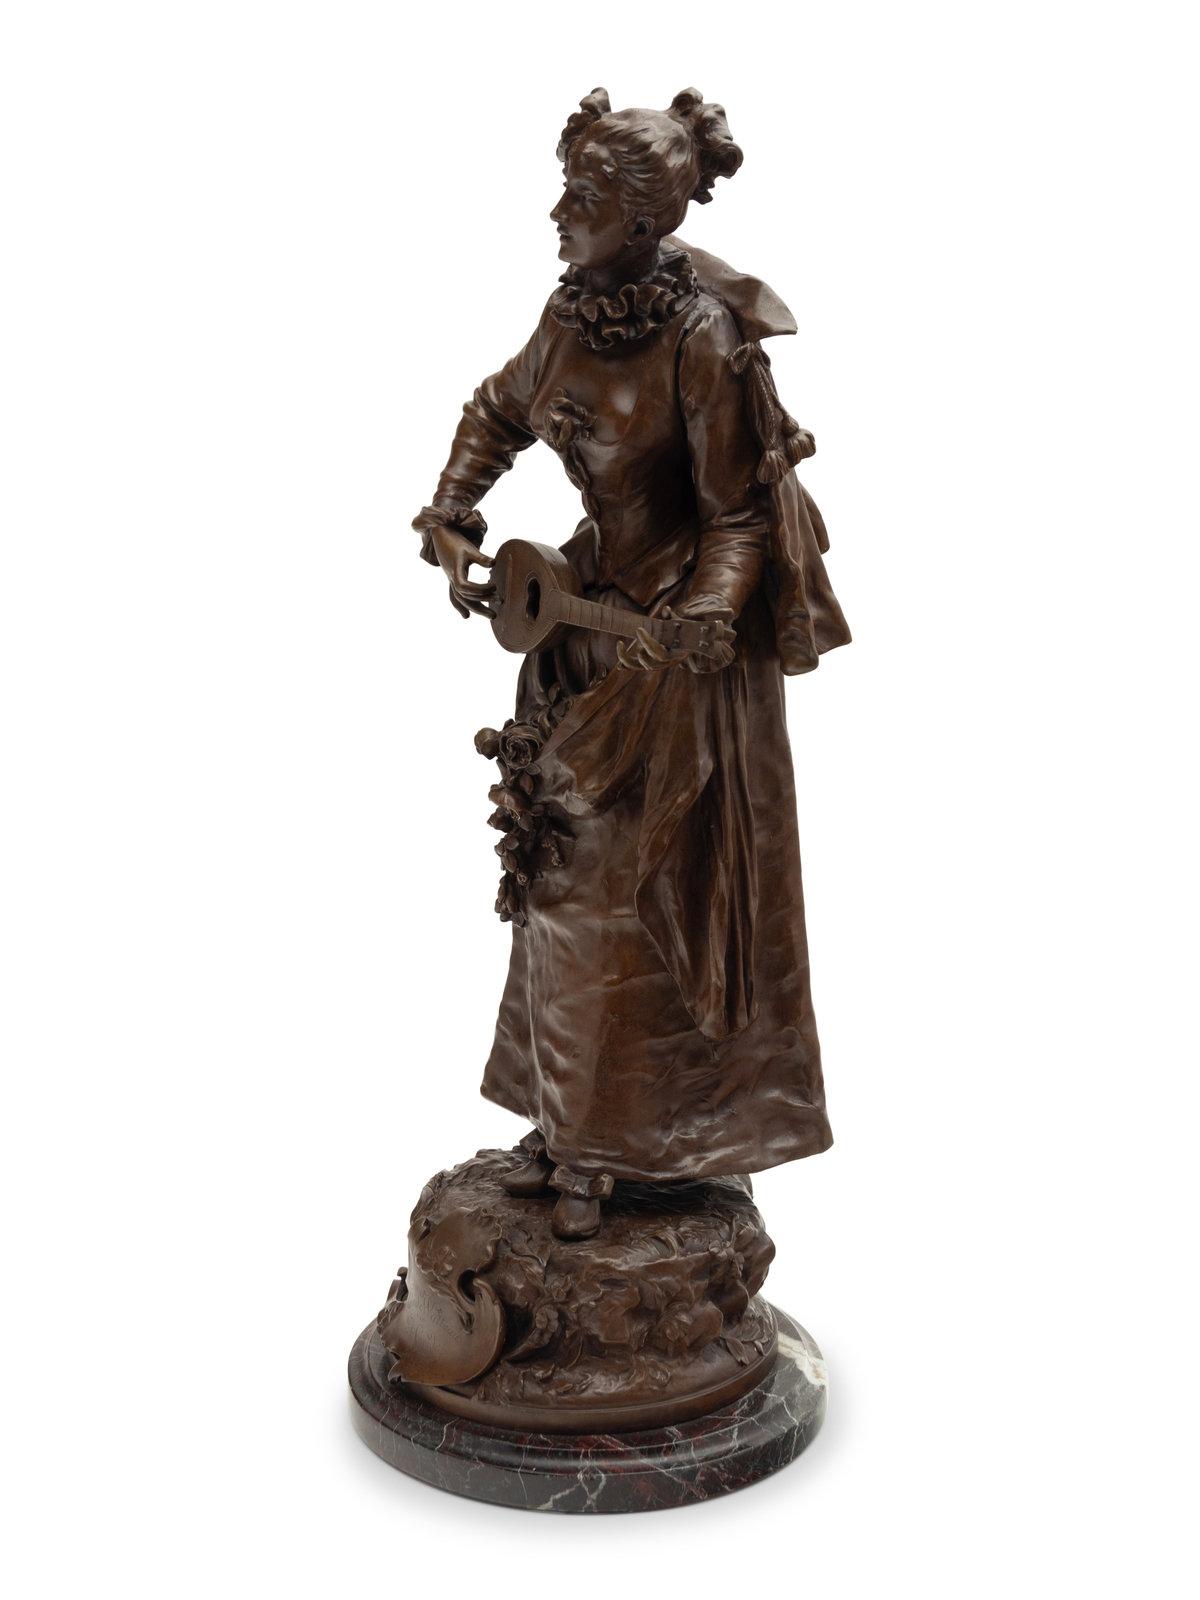 Bronzeskulptur mit brauner Patina, die eine Mandoline spielende junge Frau darstellt. Schöne frühe Ausgabe Probedruck, betitelt in einer Kartusche 